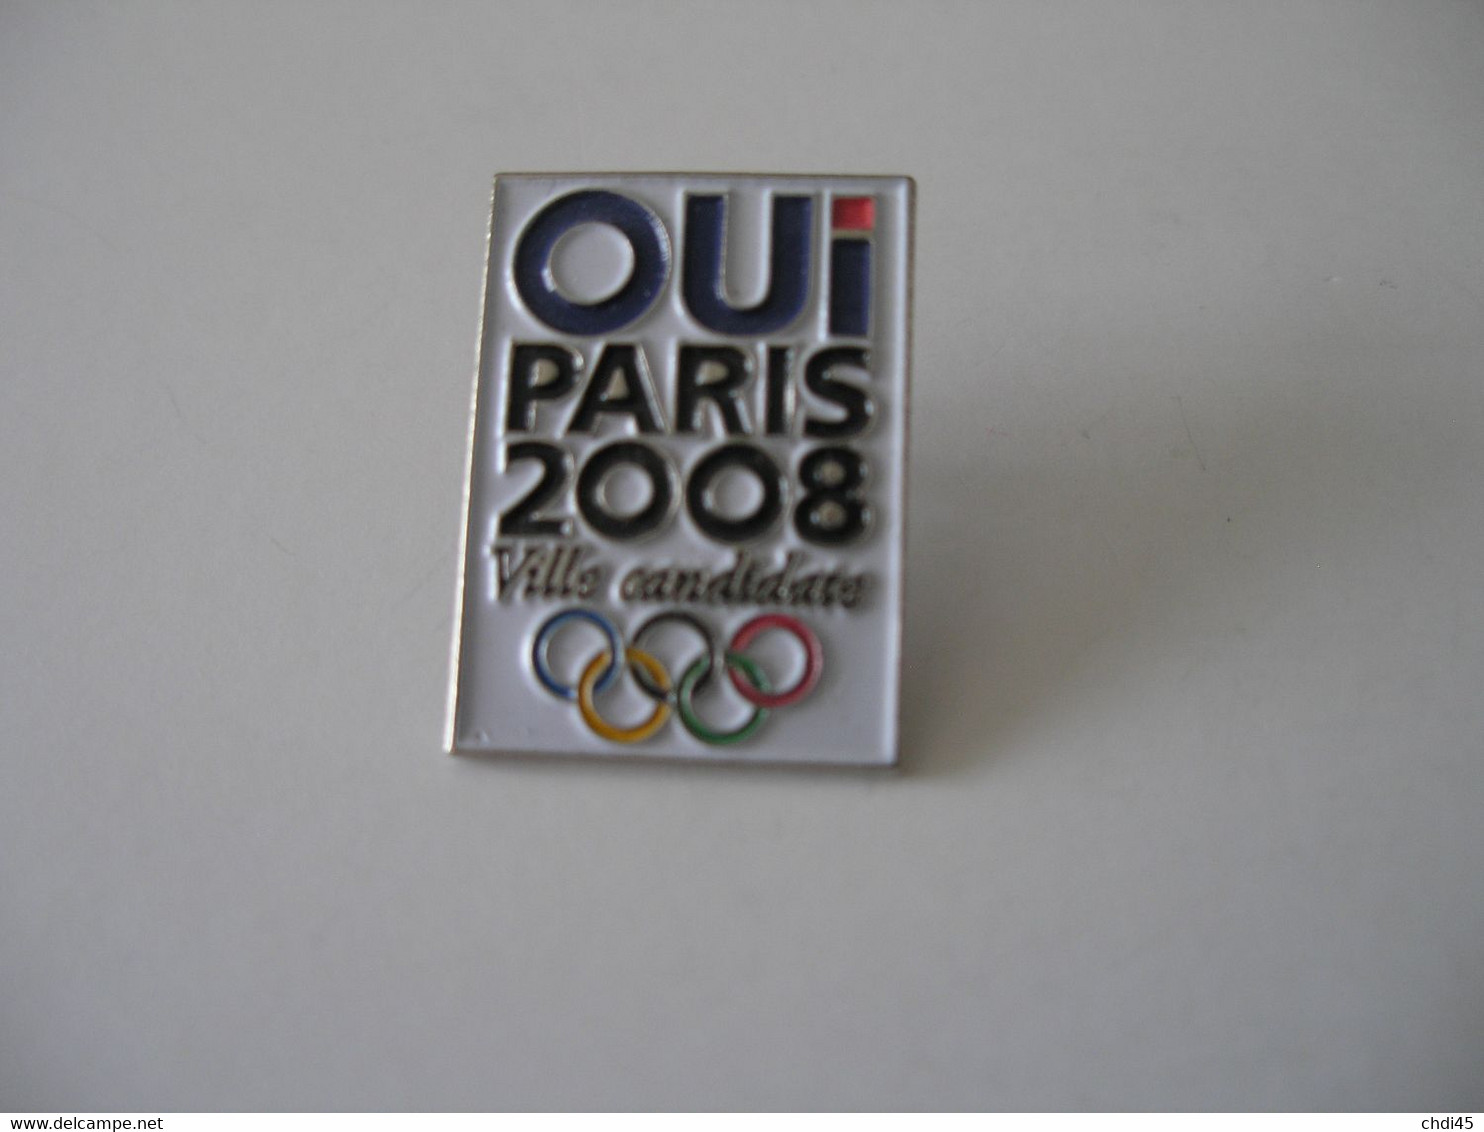 * OUI PARIS 2008 Ville Candidate Anneaux Olympiques - Jeux Olympiques